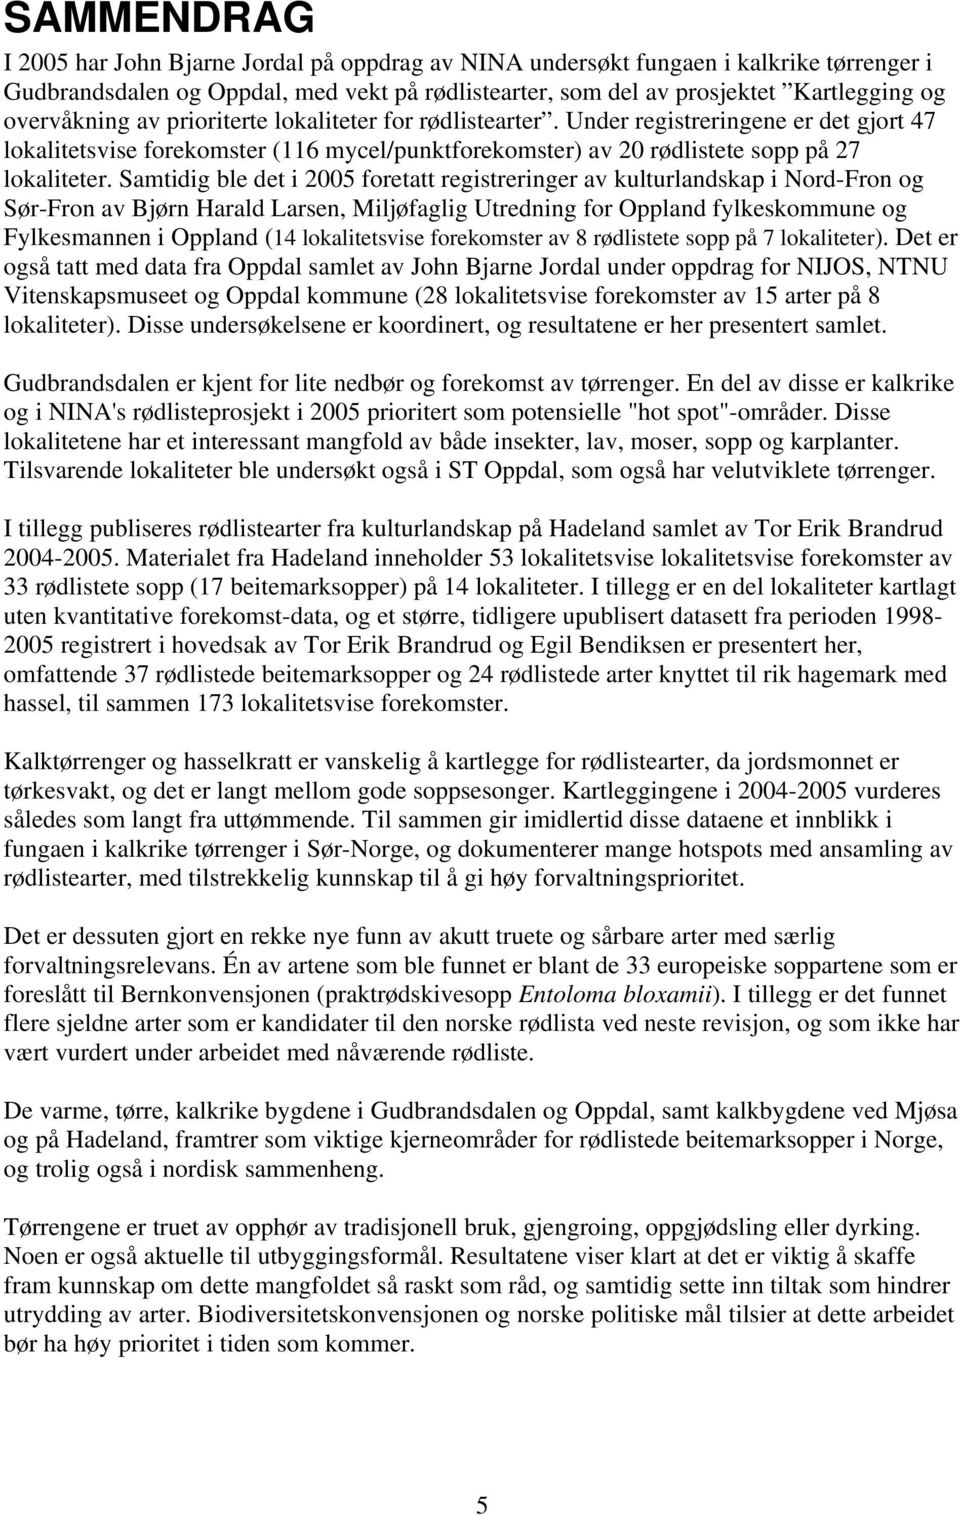 Samtidig ble det i 2005 foretatt registreringer av kulturlandskap i Nord-Fron og Sør-Fron av Bjørn Harald Larsen, Miljøfaglig Utredning for Oppland fylkeskommune og Fylkesmannen i Oppland (14